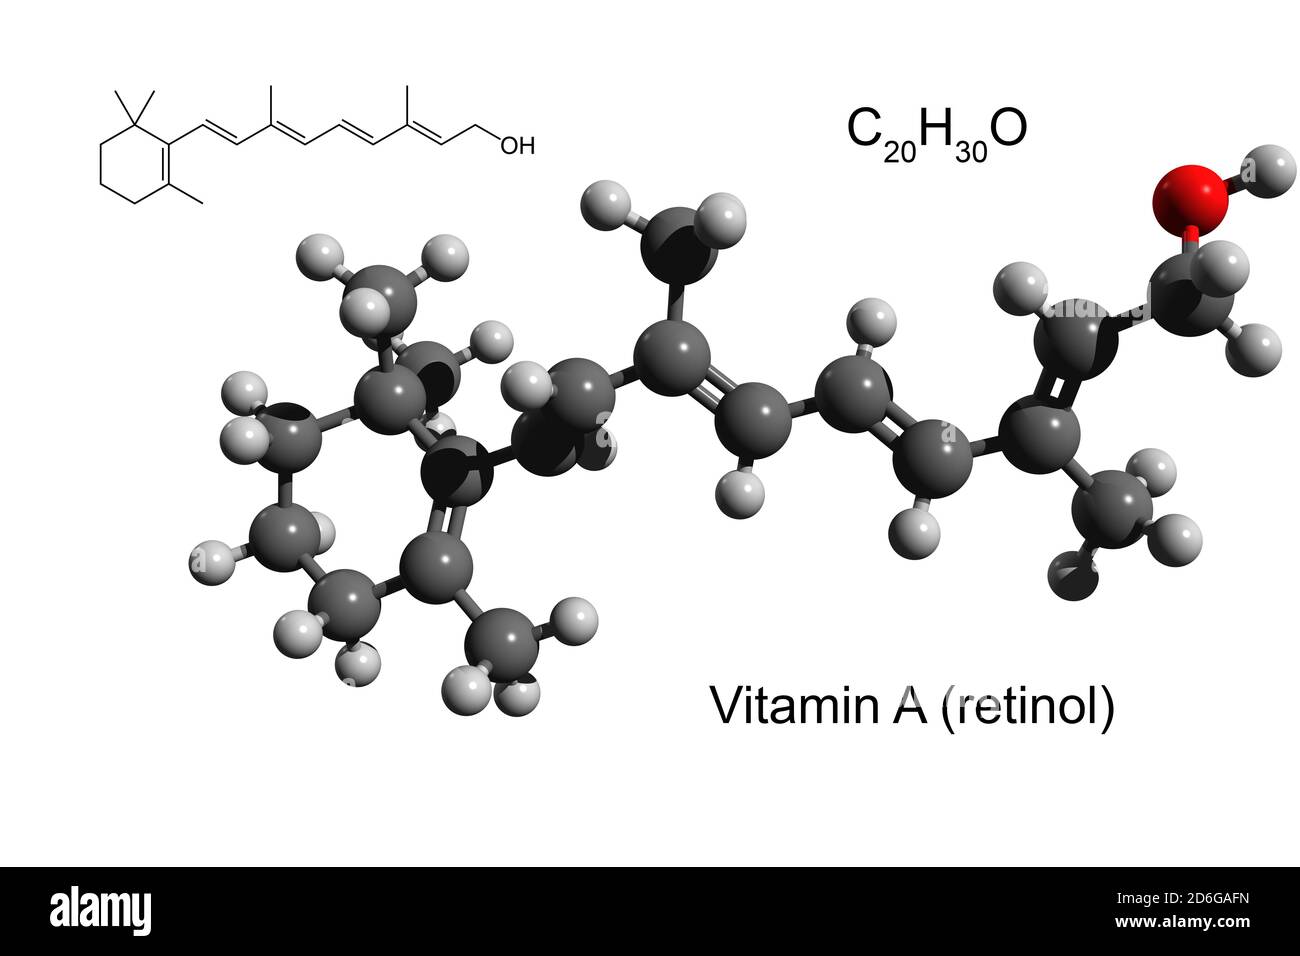 Chemische Formel, Strukturformel und 3D-Ball-and-Stick-Modell von Vitamin A  (Retinol), weißer Hintergrund Stockfotografie - Alamy